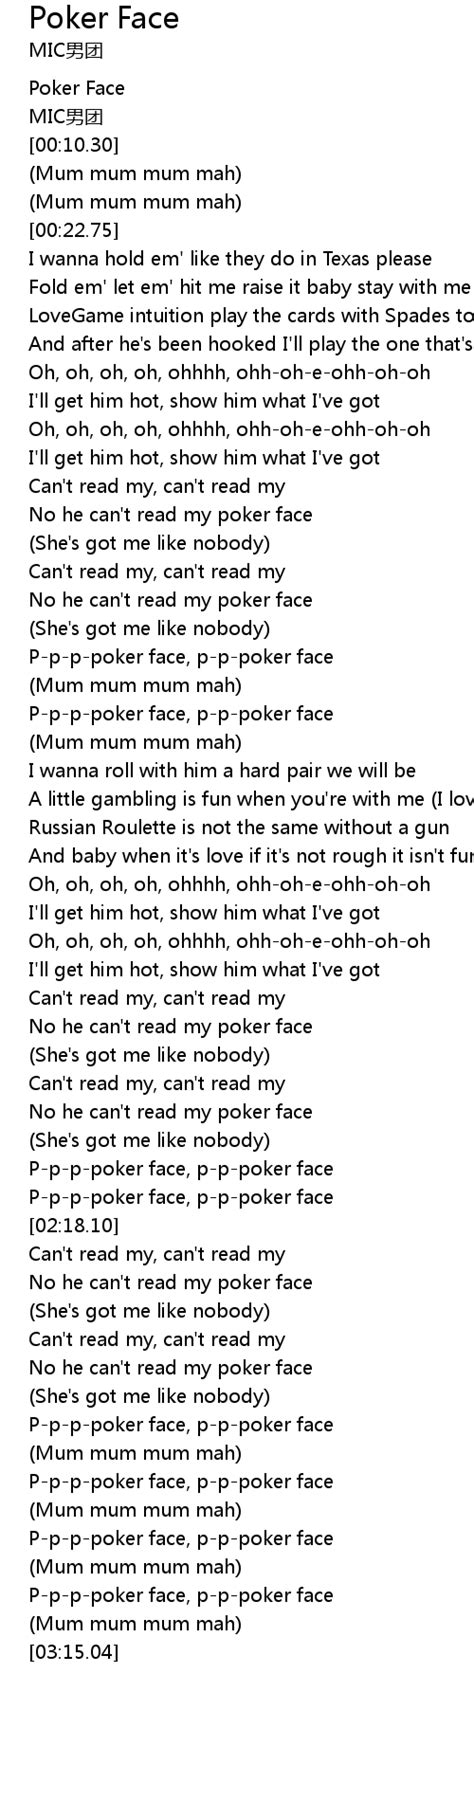 Poker Face Tekst Eu Prevod